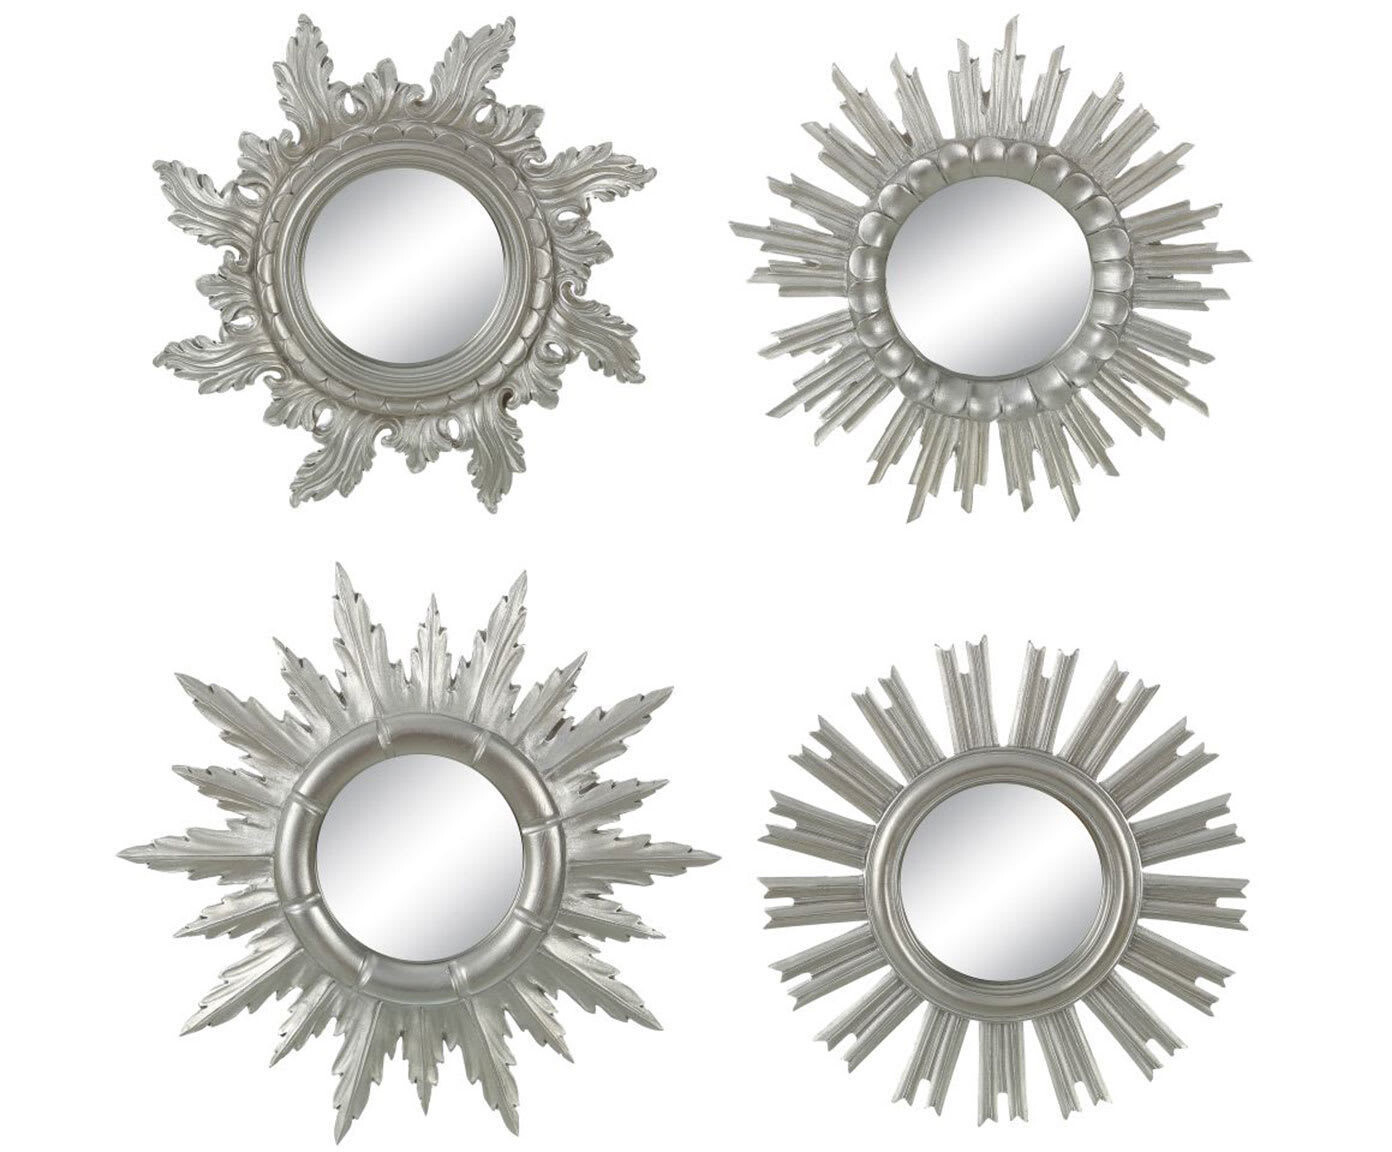 Комплект зеркал-солнце в серебряных рамах Silver Sunny, 4 штуки